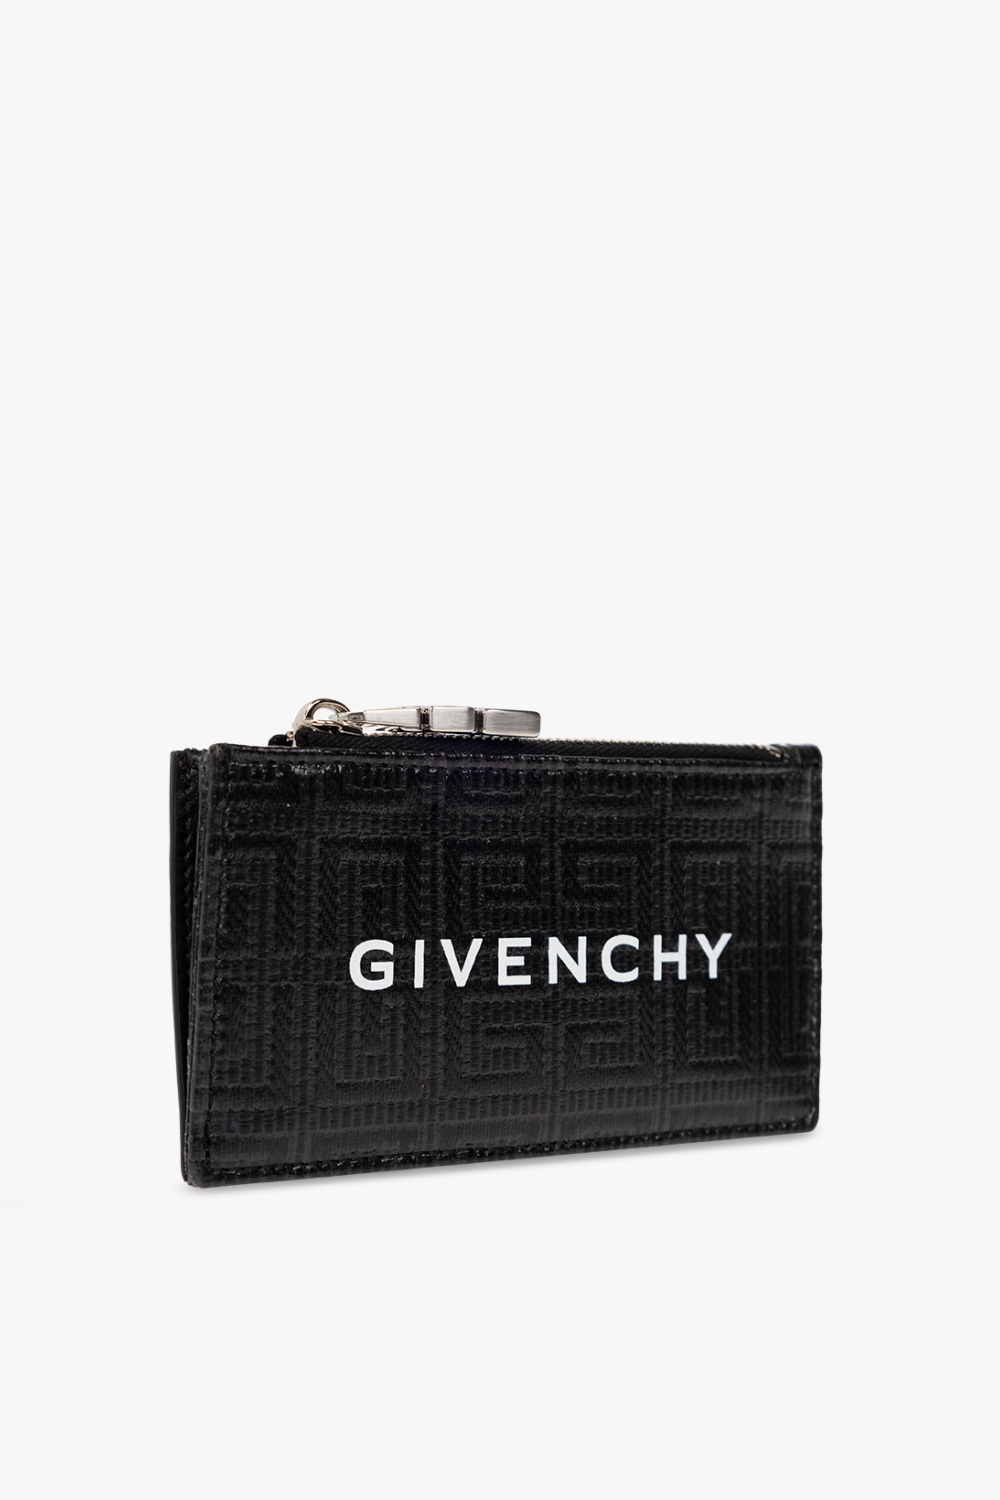 Givenchy LOGO givenchy red bag